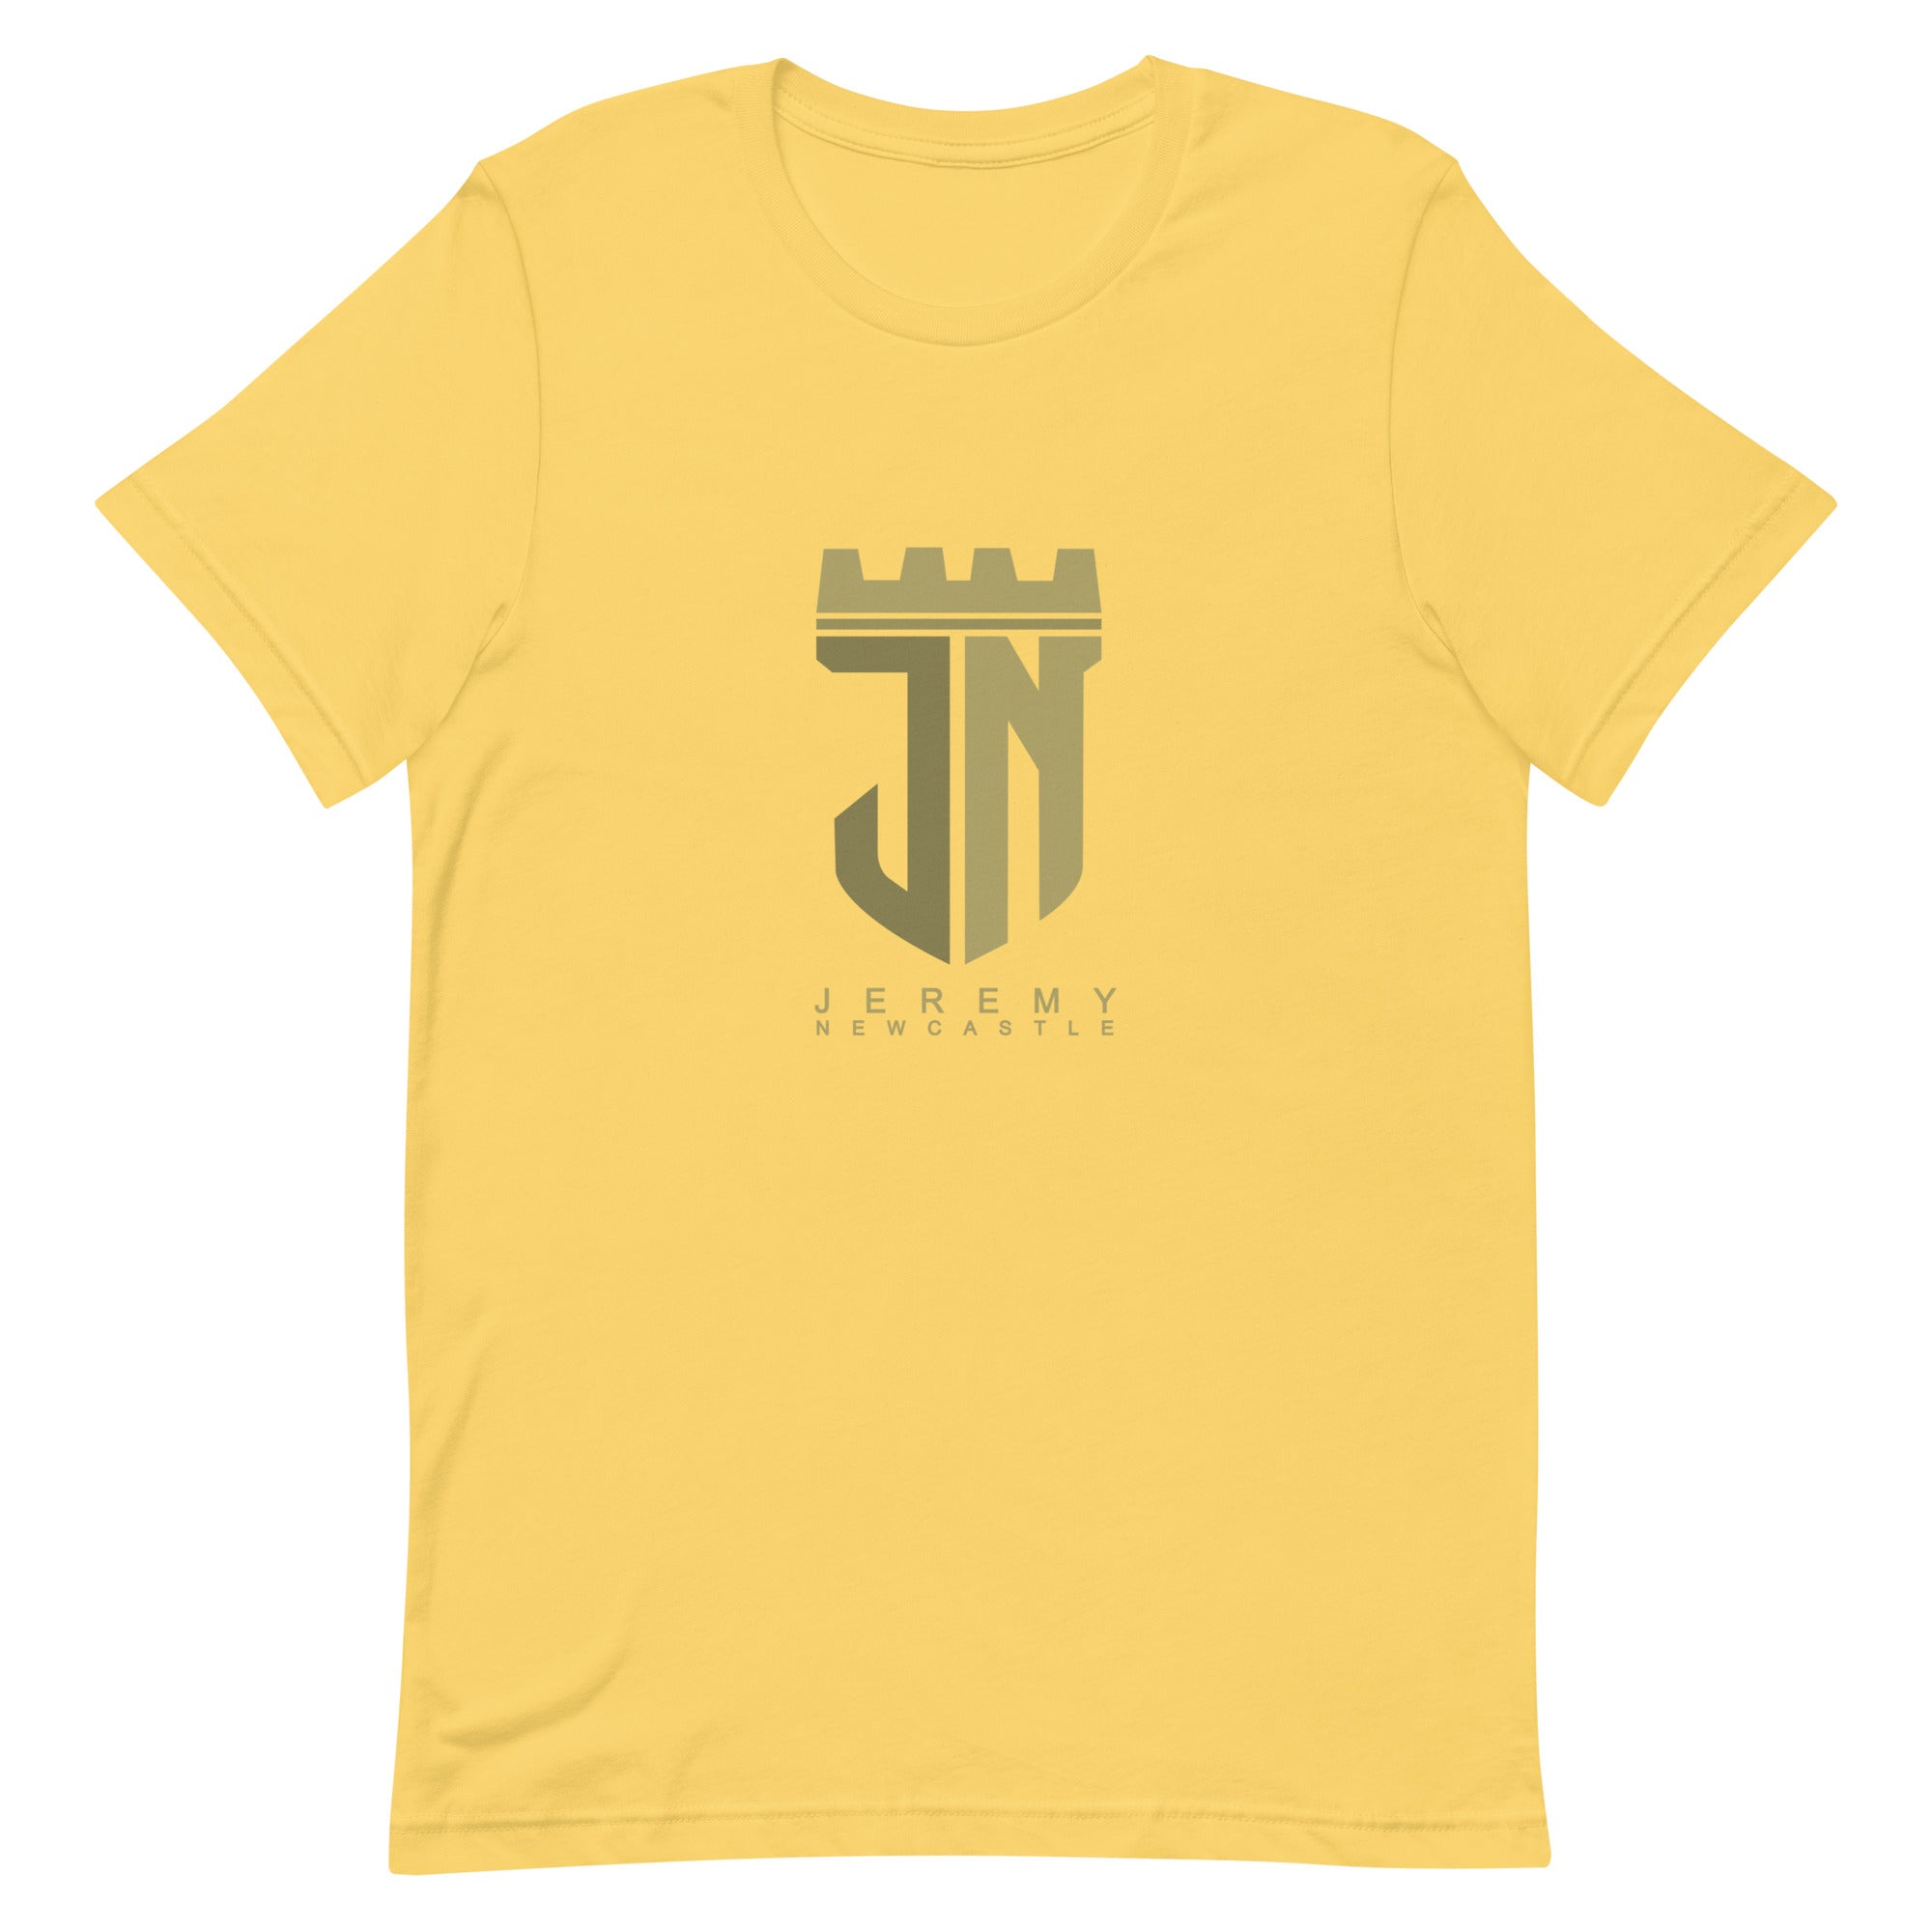 Jeremy Newcastle - Unisex t-shirt